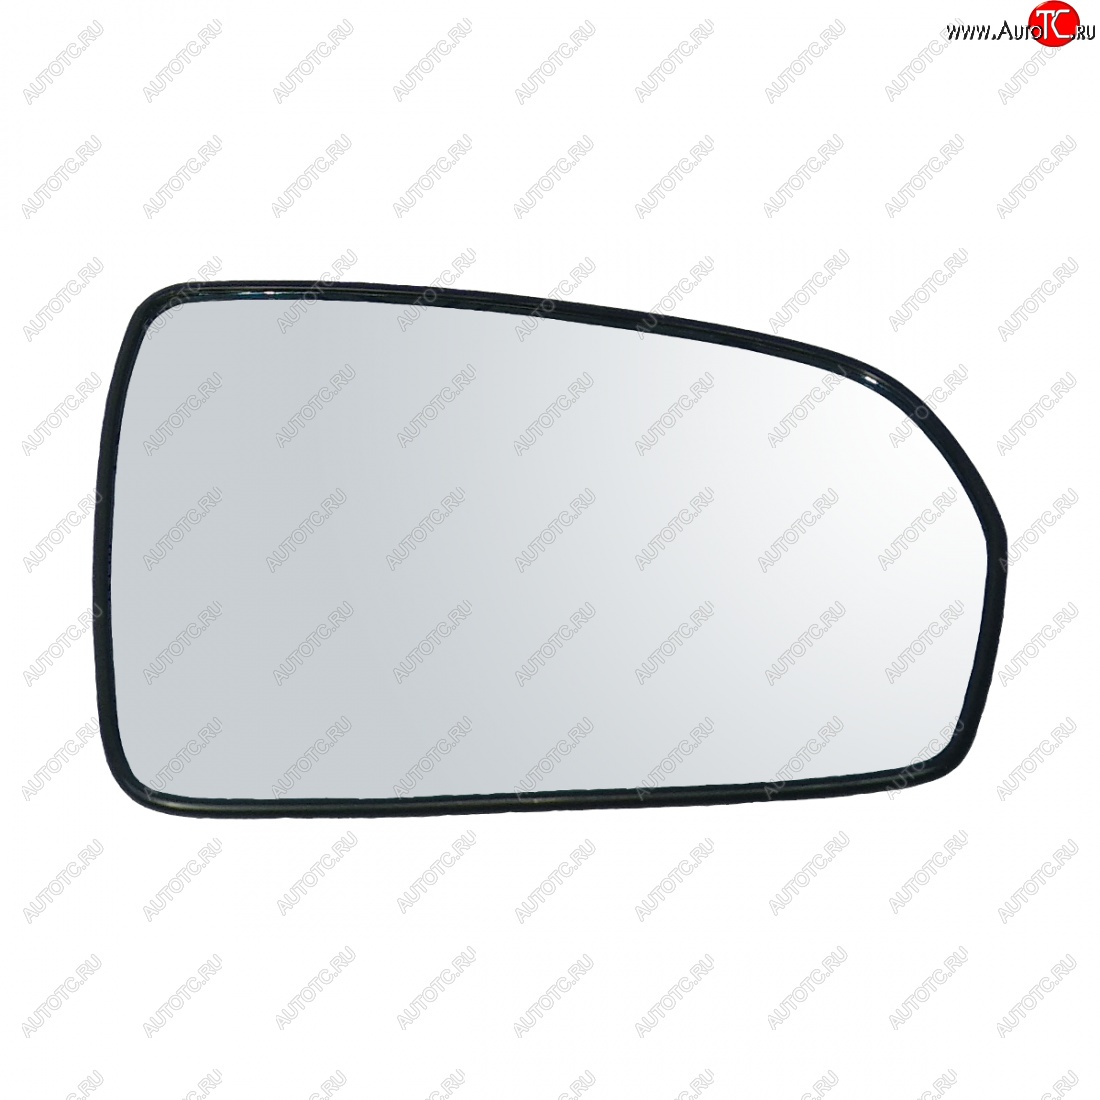 349 р. Правый зеркальный элемент (обогрев) AutoBlik2 Лада Веста 2180 седан дорестайлинг (2015-2023) (без антибликового покрытия)